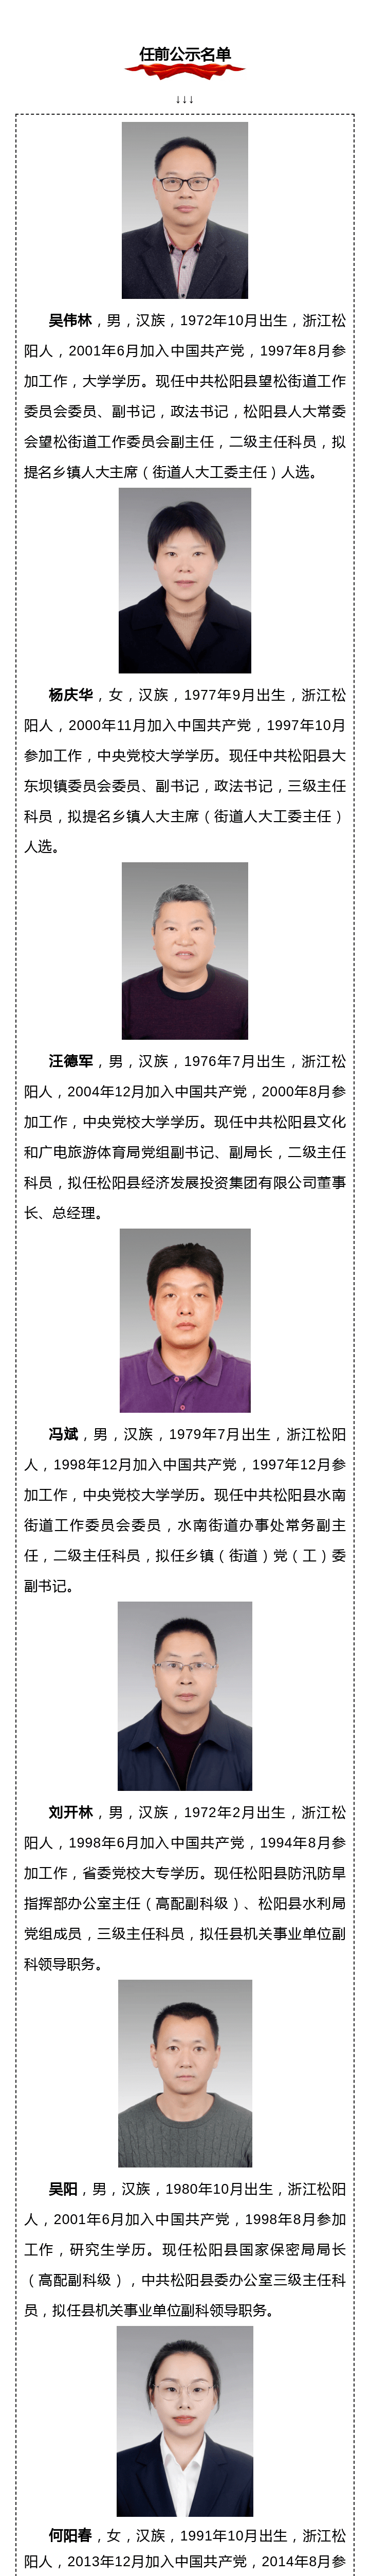 松阳县拟提拔任用县管领导干部任前公示通告202010号